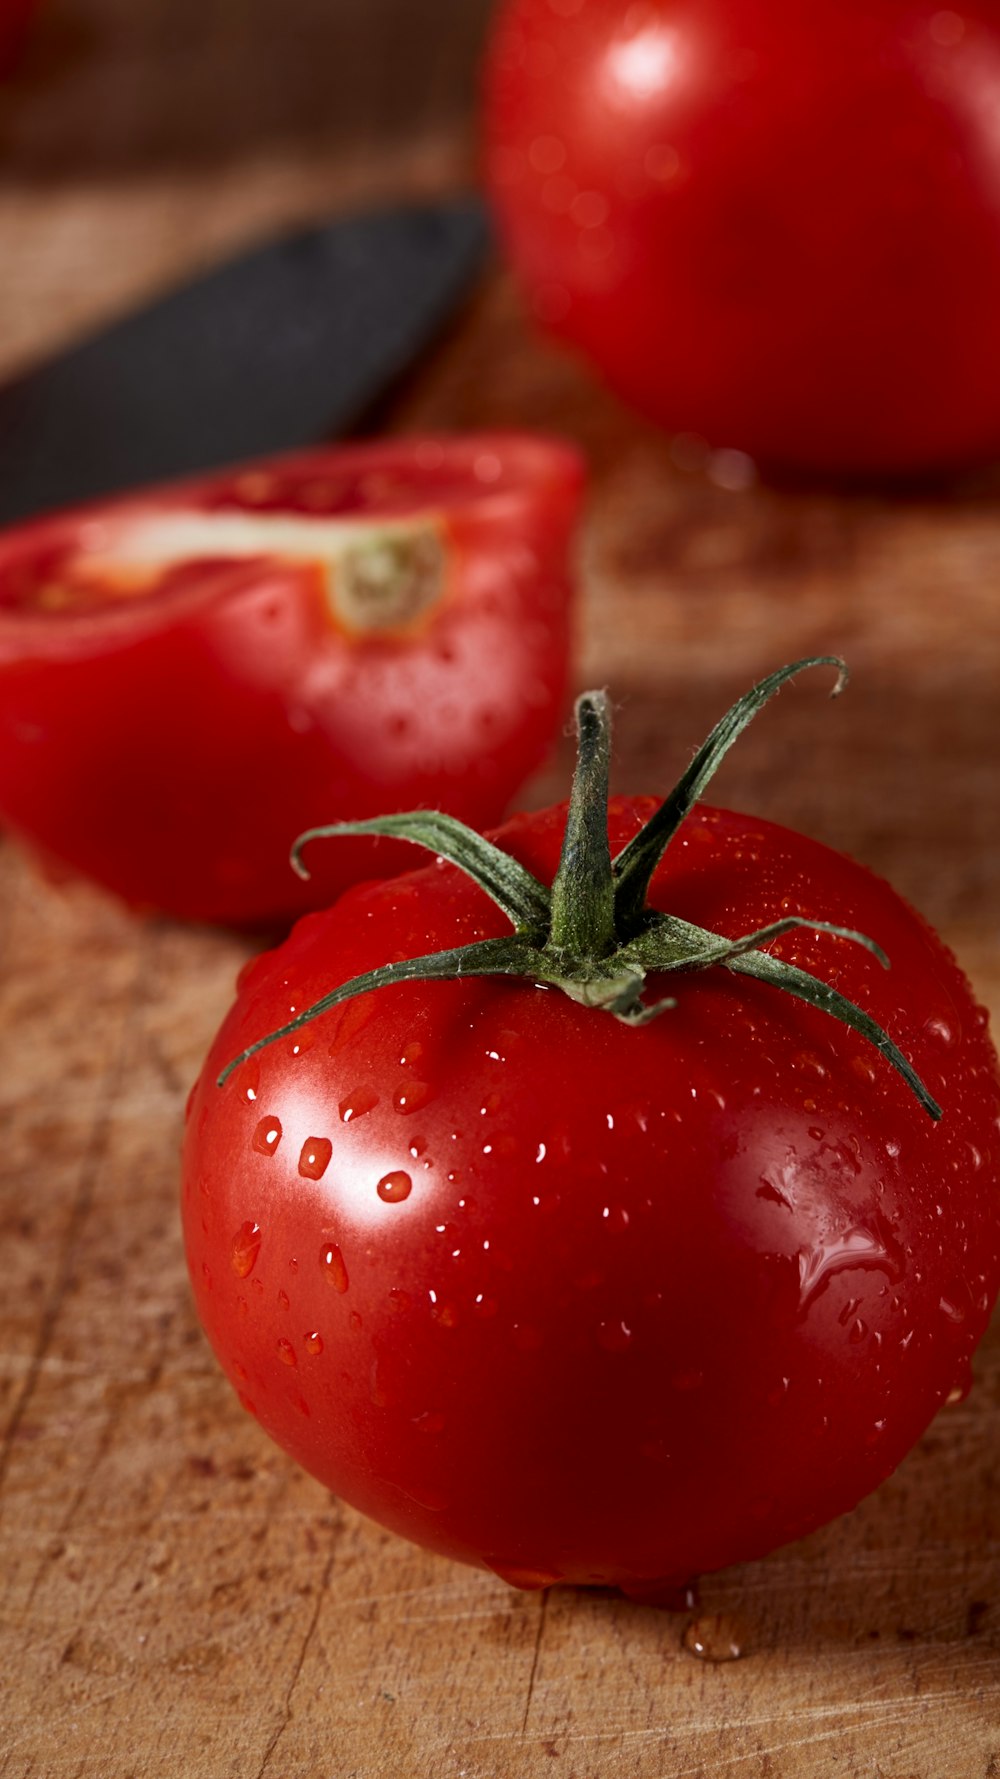 スライスした赤いトマトの横に2つの赤いトマト